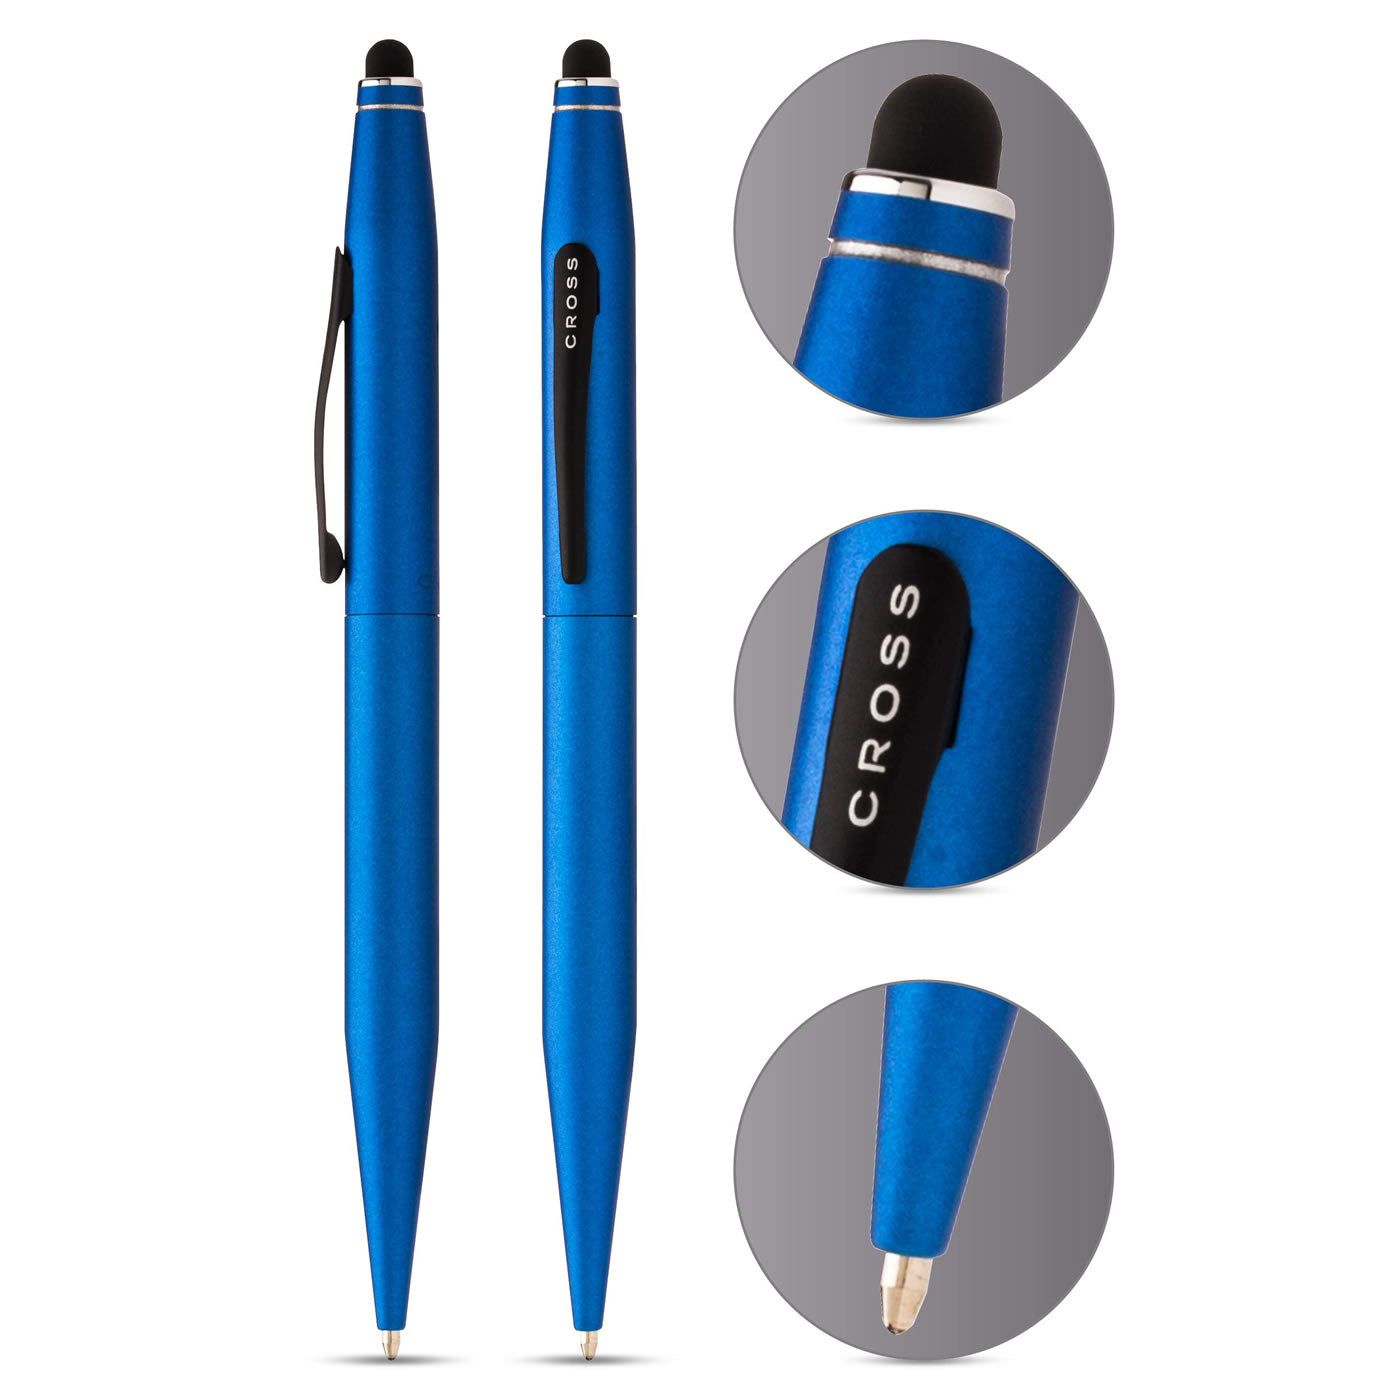 Cross Tech 2 Metallic Blue Ballpoint Pen